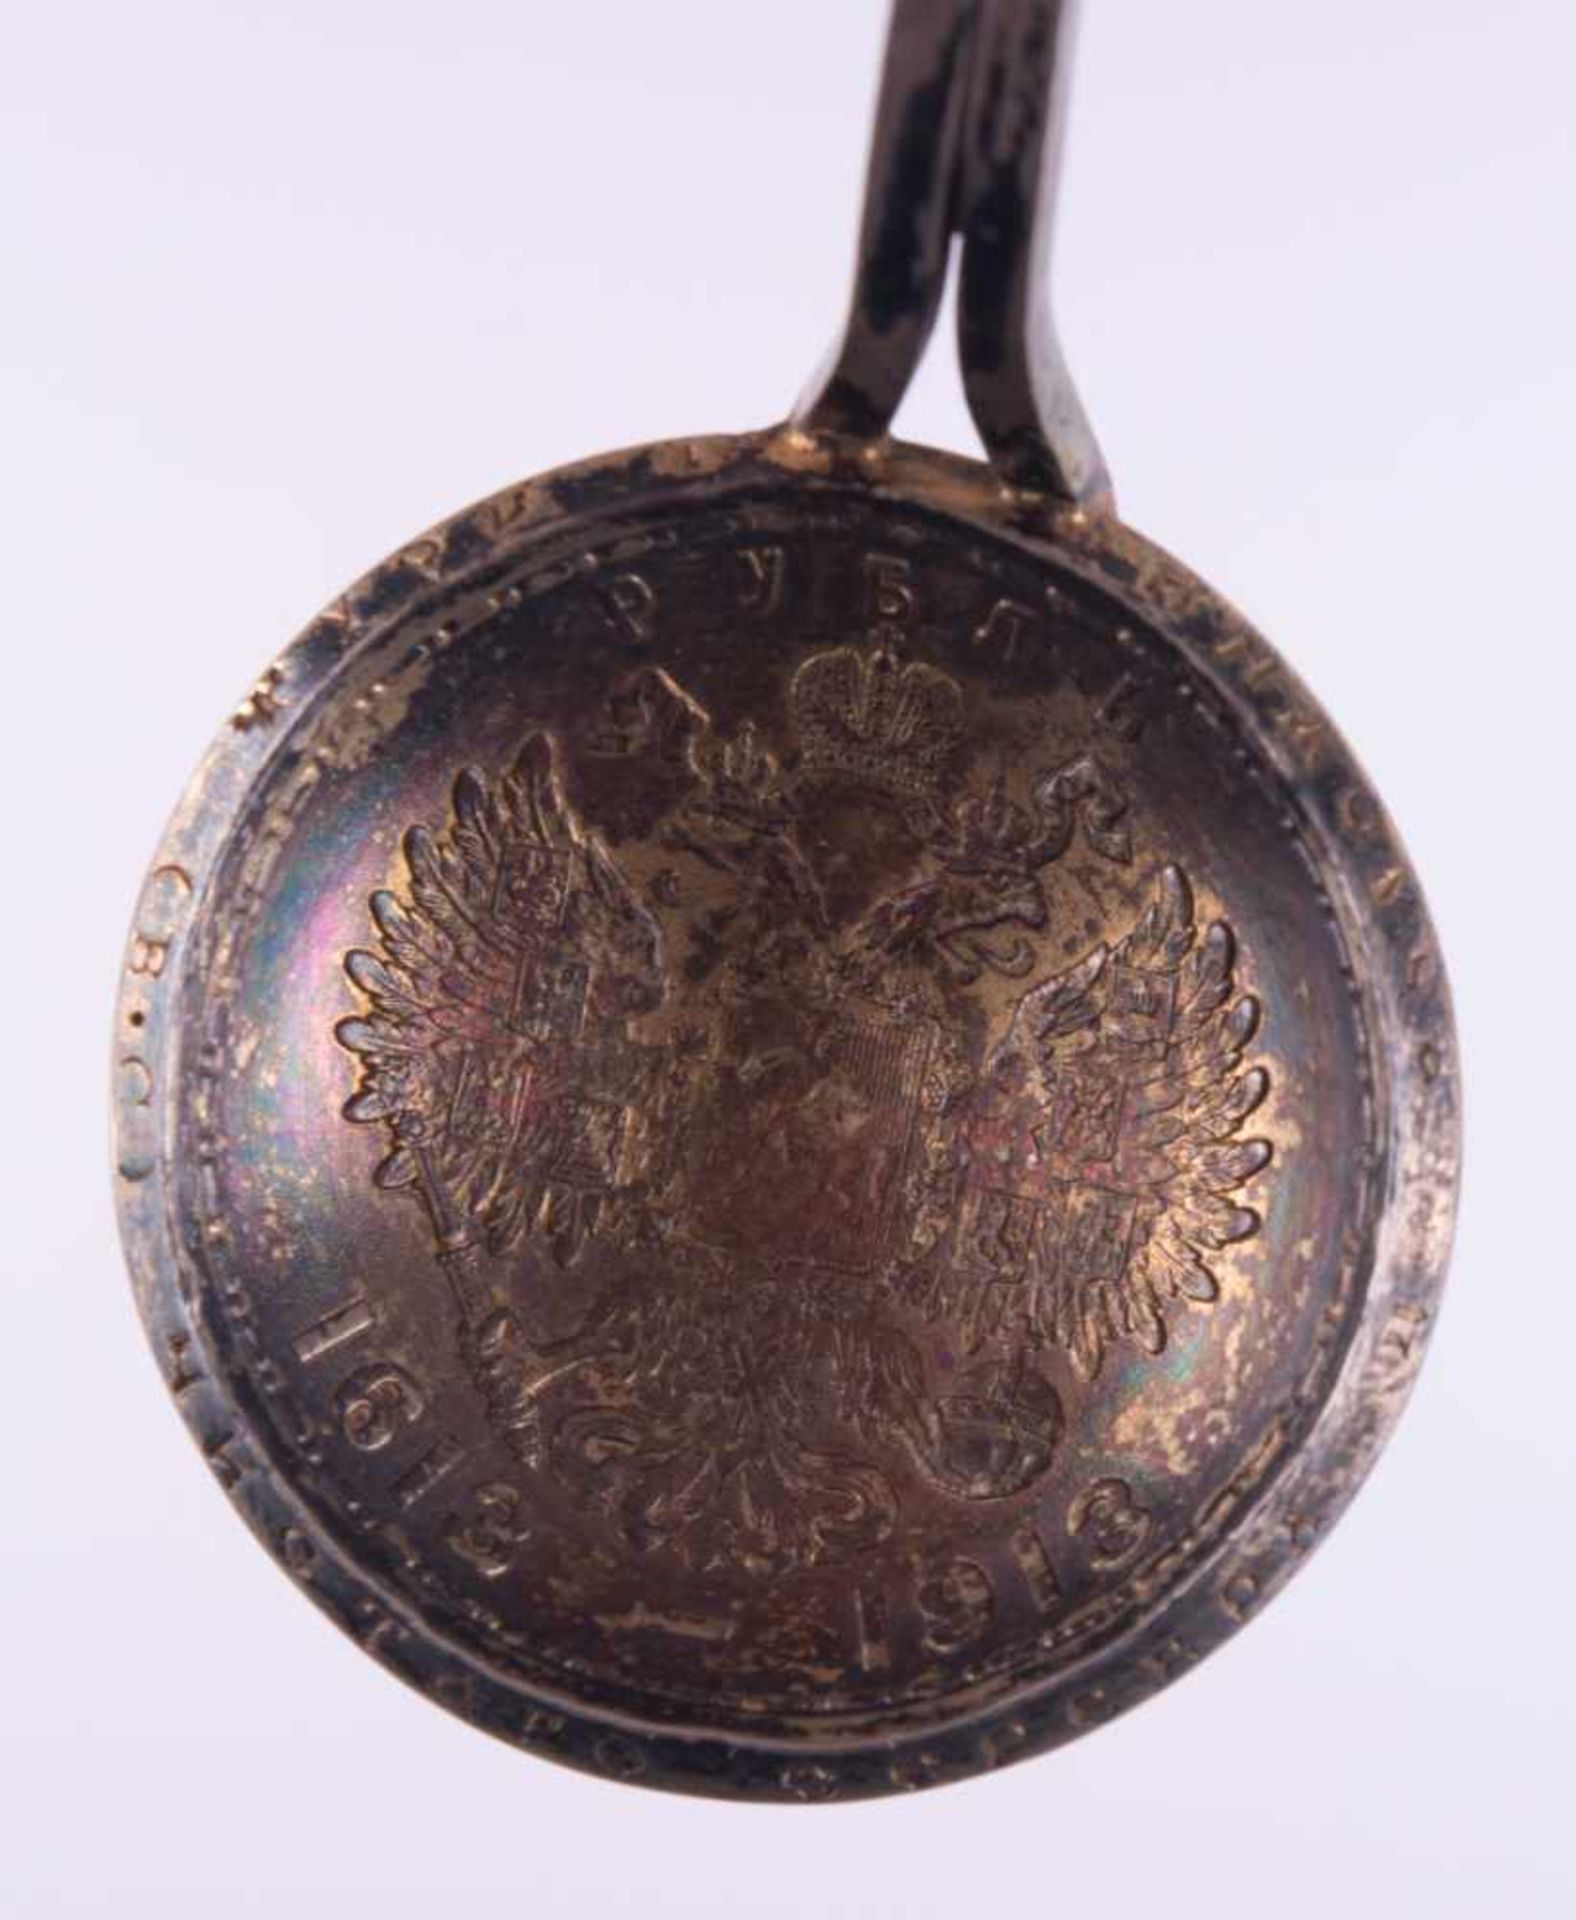 Münzlöffel Silber, Russland 1 Rubel 1913 - 300 Jahre Romanow Dynastie 1613-1913, Fassung 900/000 - Image 3 of 3